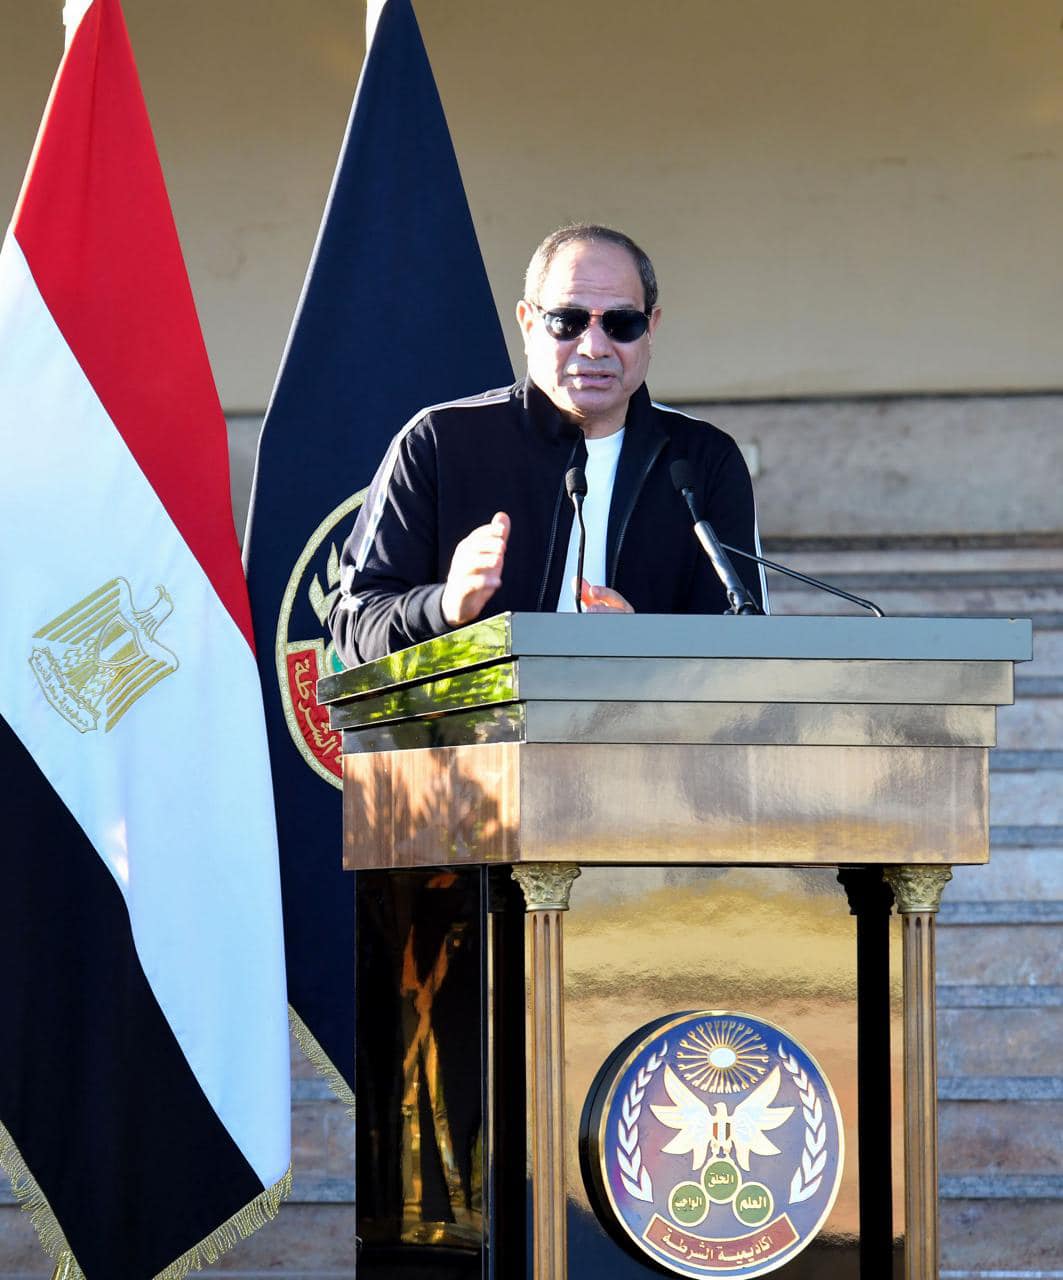 432974645 970591594429569 6945561448801743829 n 1 مصر .. الرئيس السيسي: الدولة اتخذت خطوات لتحسين وتطوير وإصلاح الموقف الاقتصادي